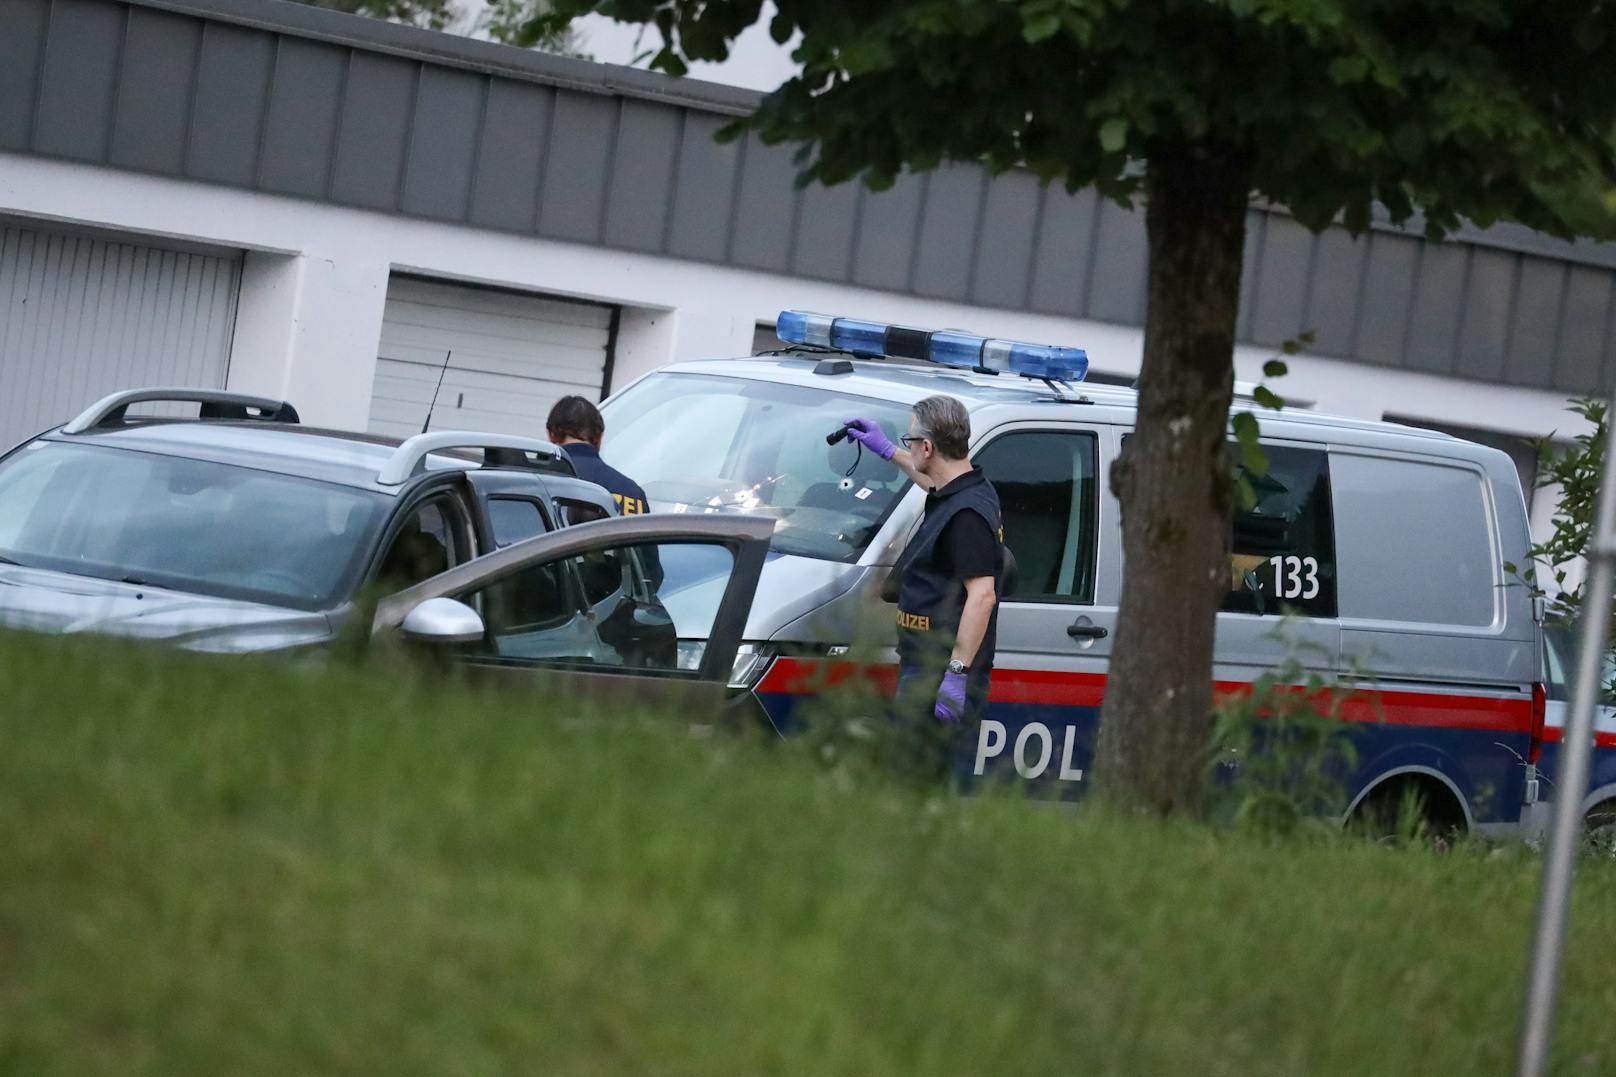 Im Zuge eines Einsatzes in Altmünster gab es laut Einsatzkräften einen Schusswechsel. Im Bild: Einschusslöcher in einem Polizeibus.